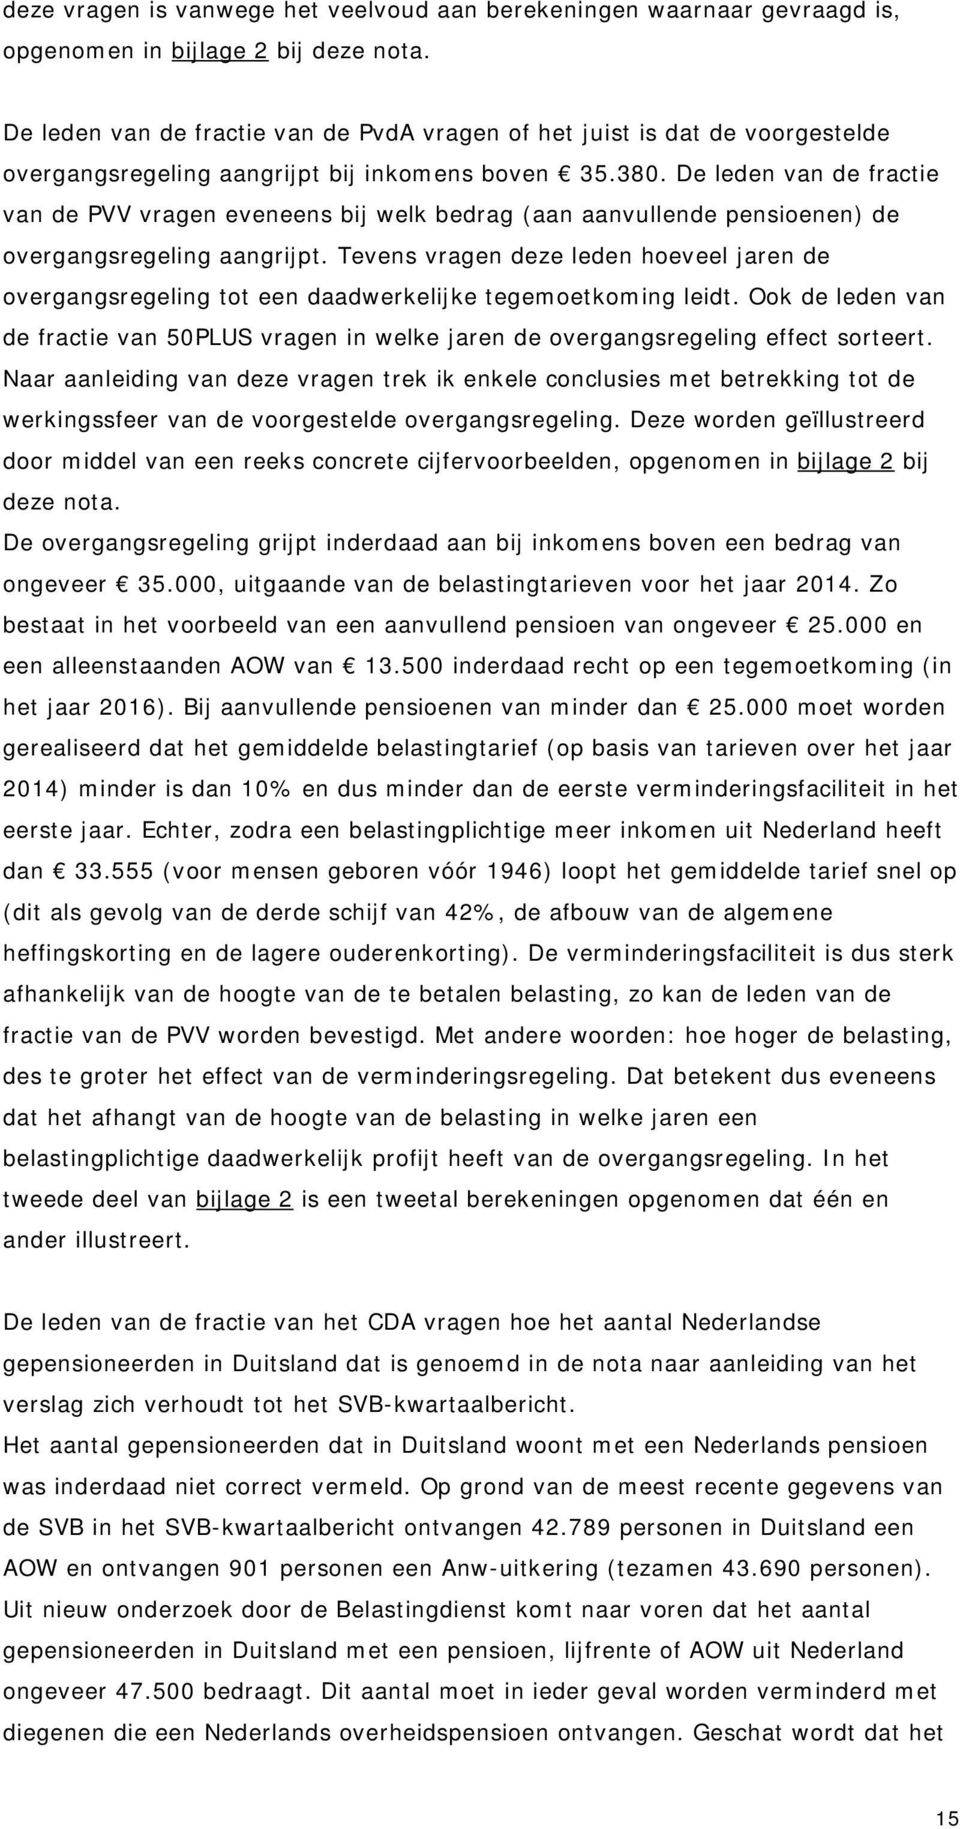 De leden van de fractie van de PVV vragen eveneens bij welk bedrag (aan aanvullende pensioenen) de overgangsregeling aangrijpt.